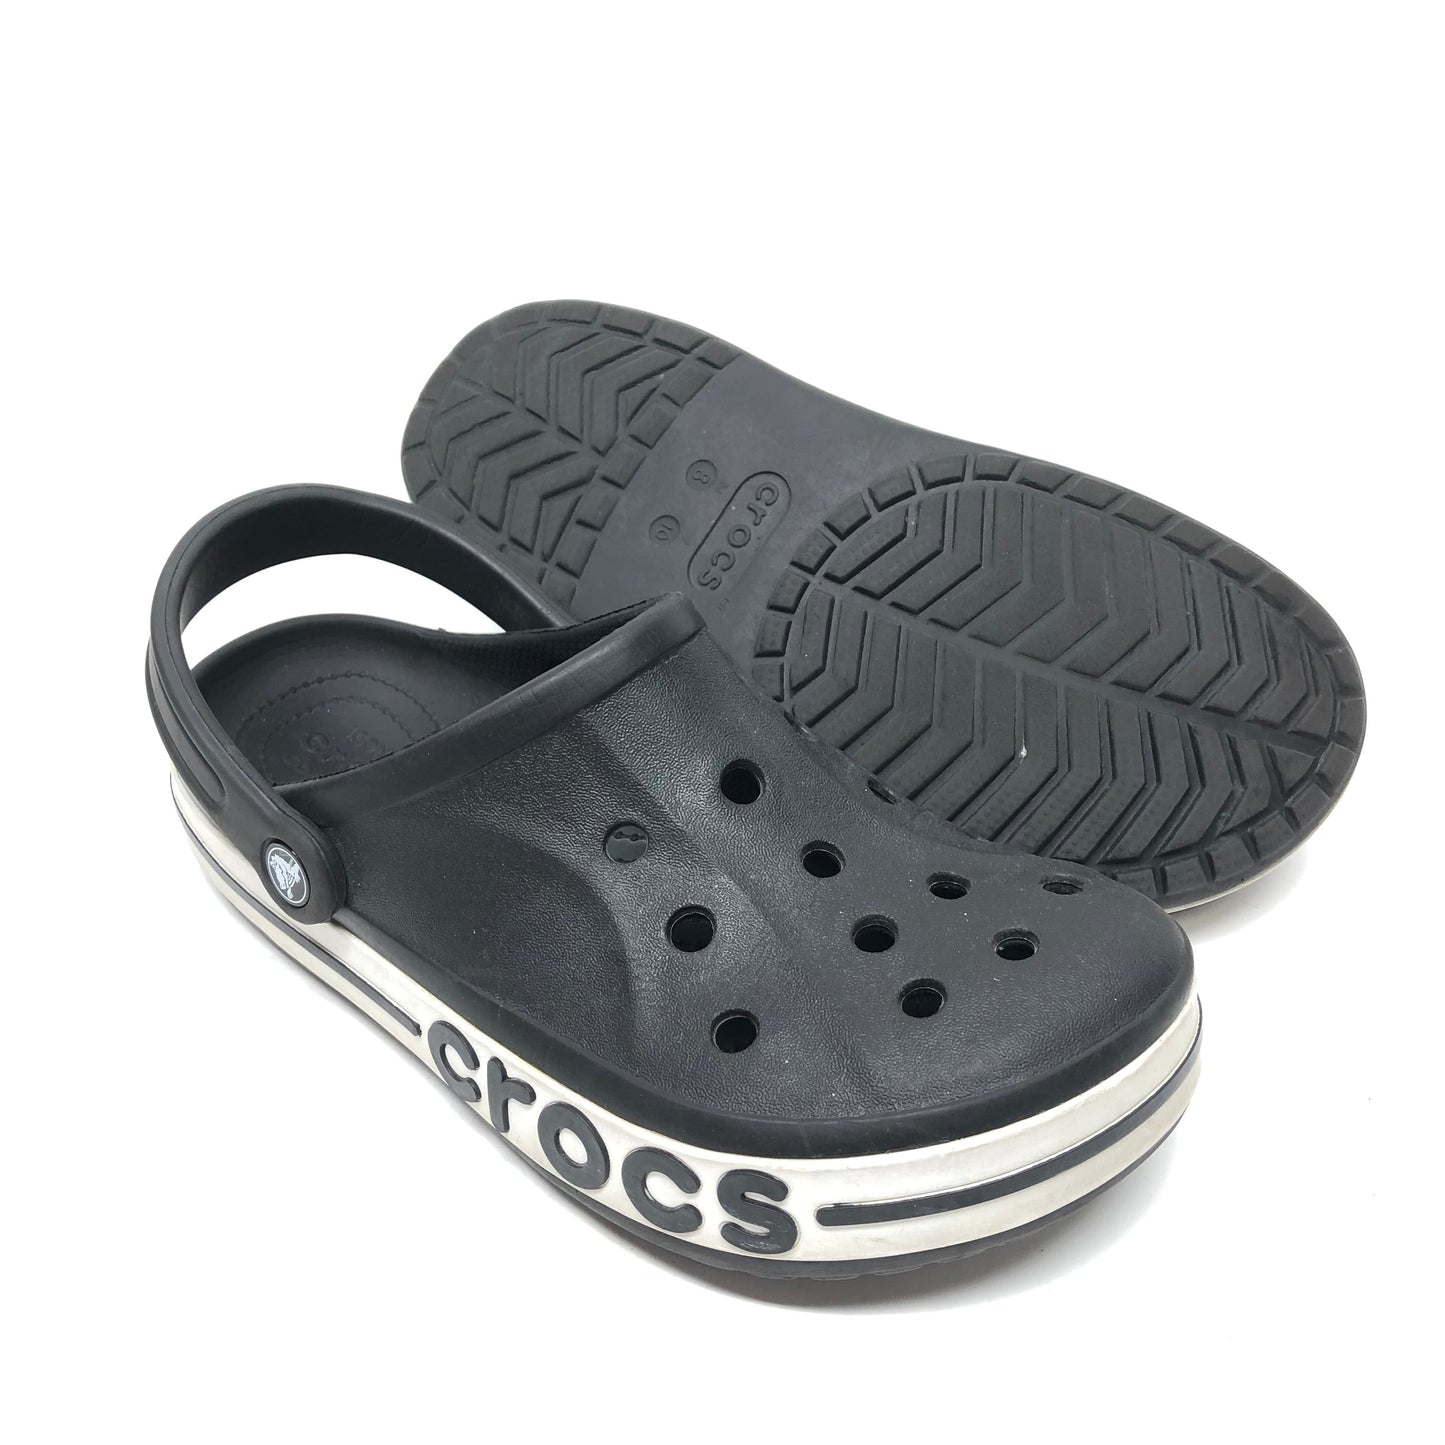 Black Sandals Sport Crocs, Size 10